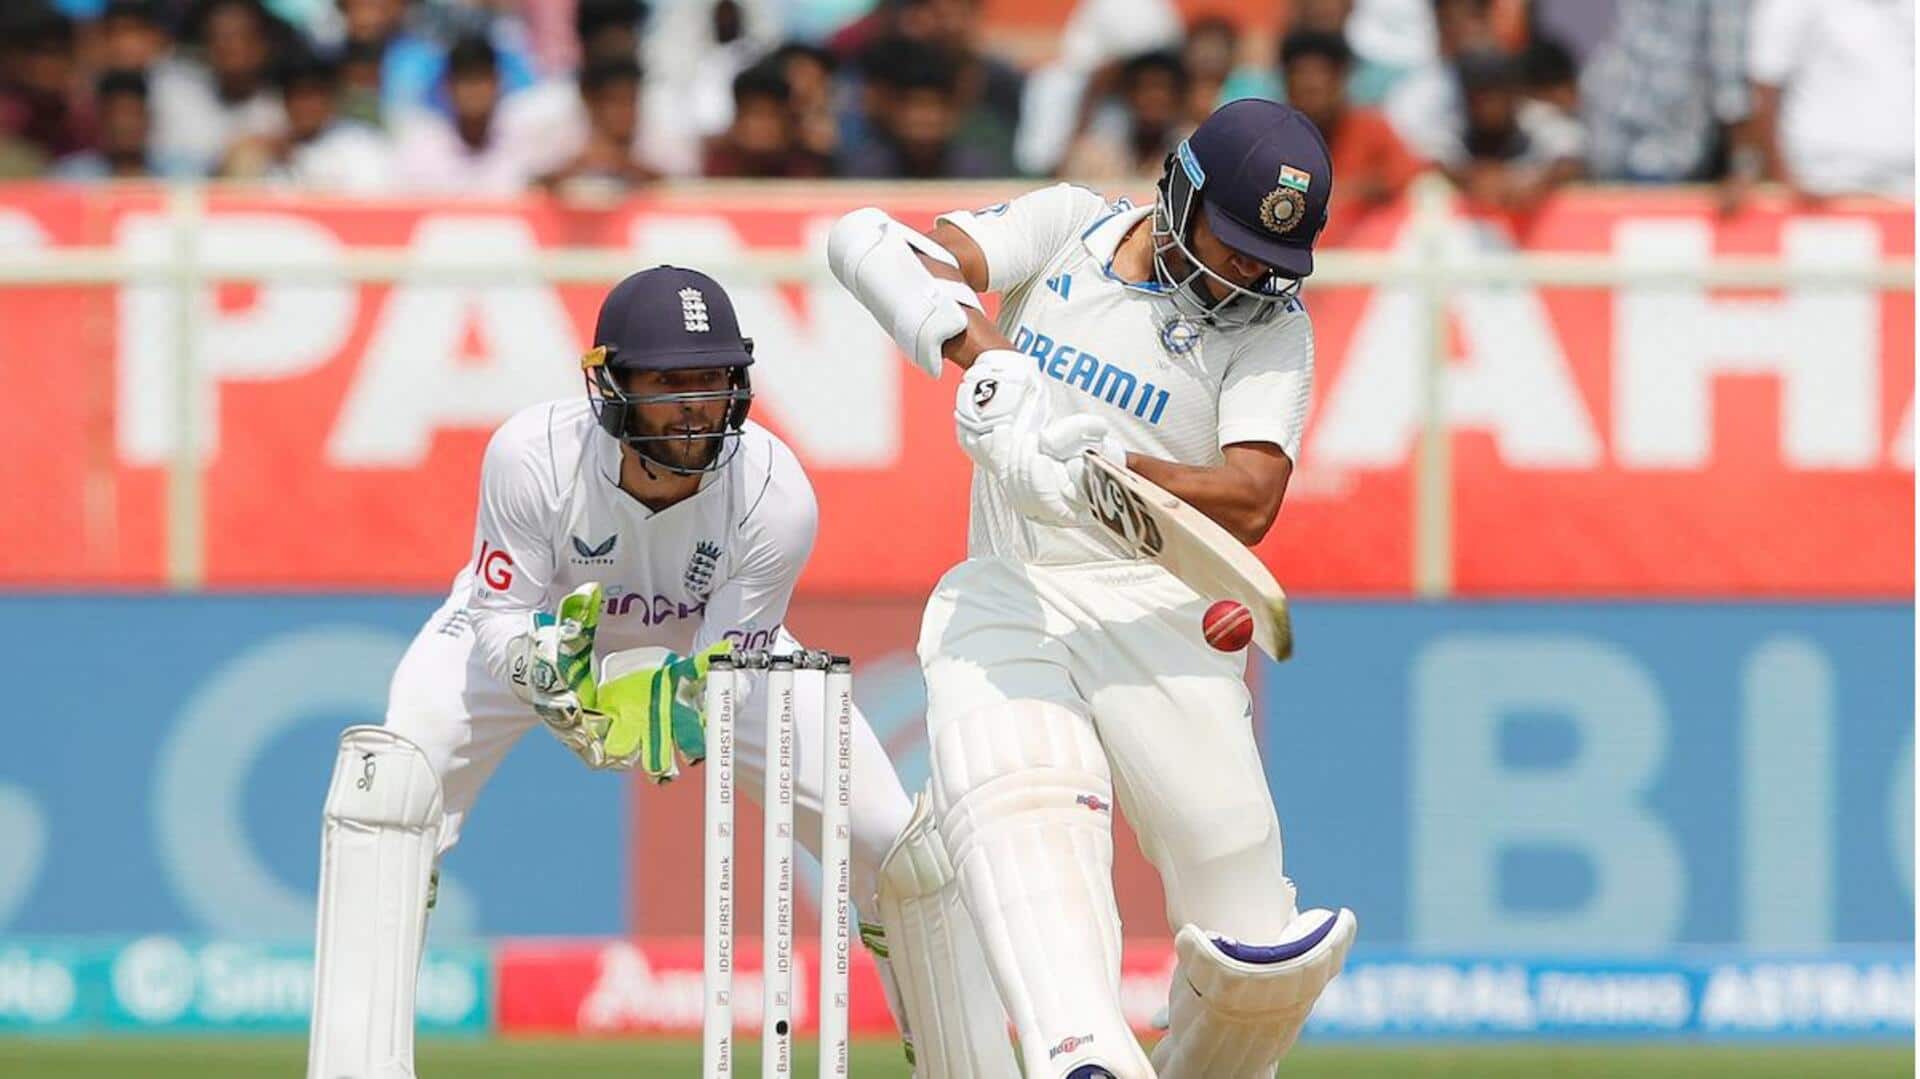 Yashasvi Jaiswal slams his maiden Test century in India